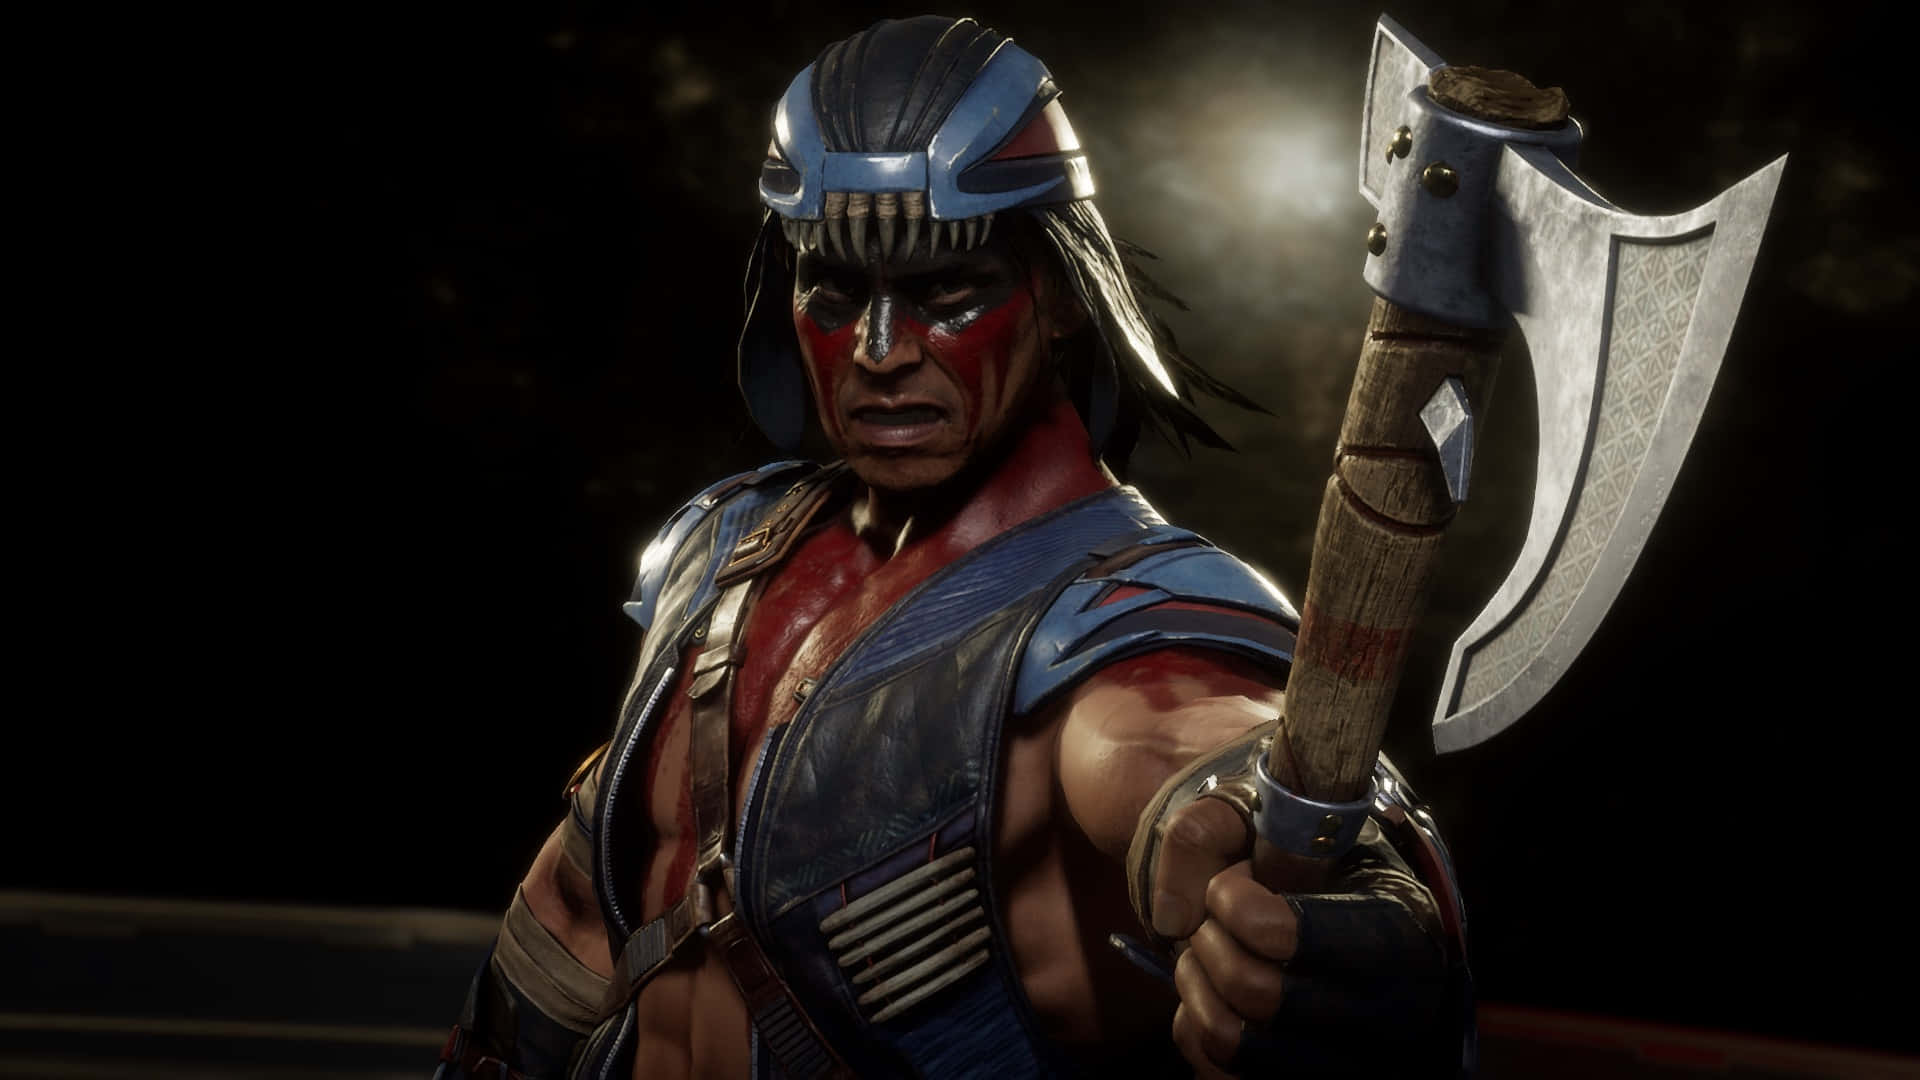 Nightwolf in Action: Mortal Kombat Warrior Wallpaper